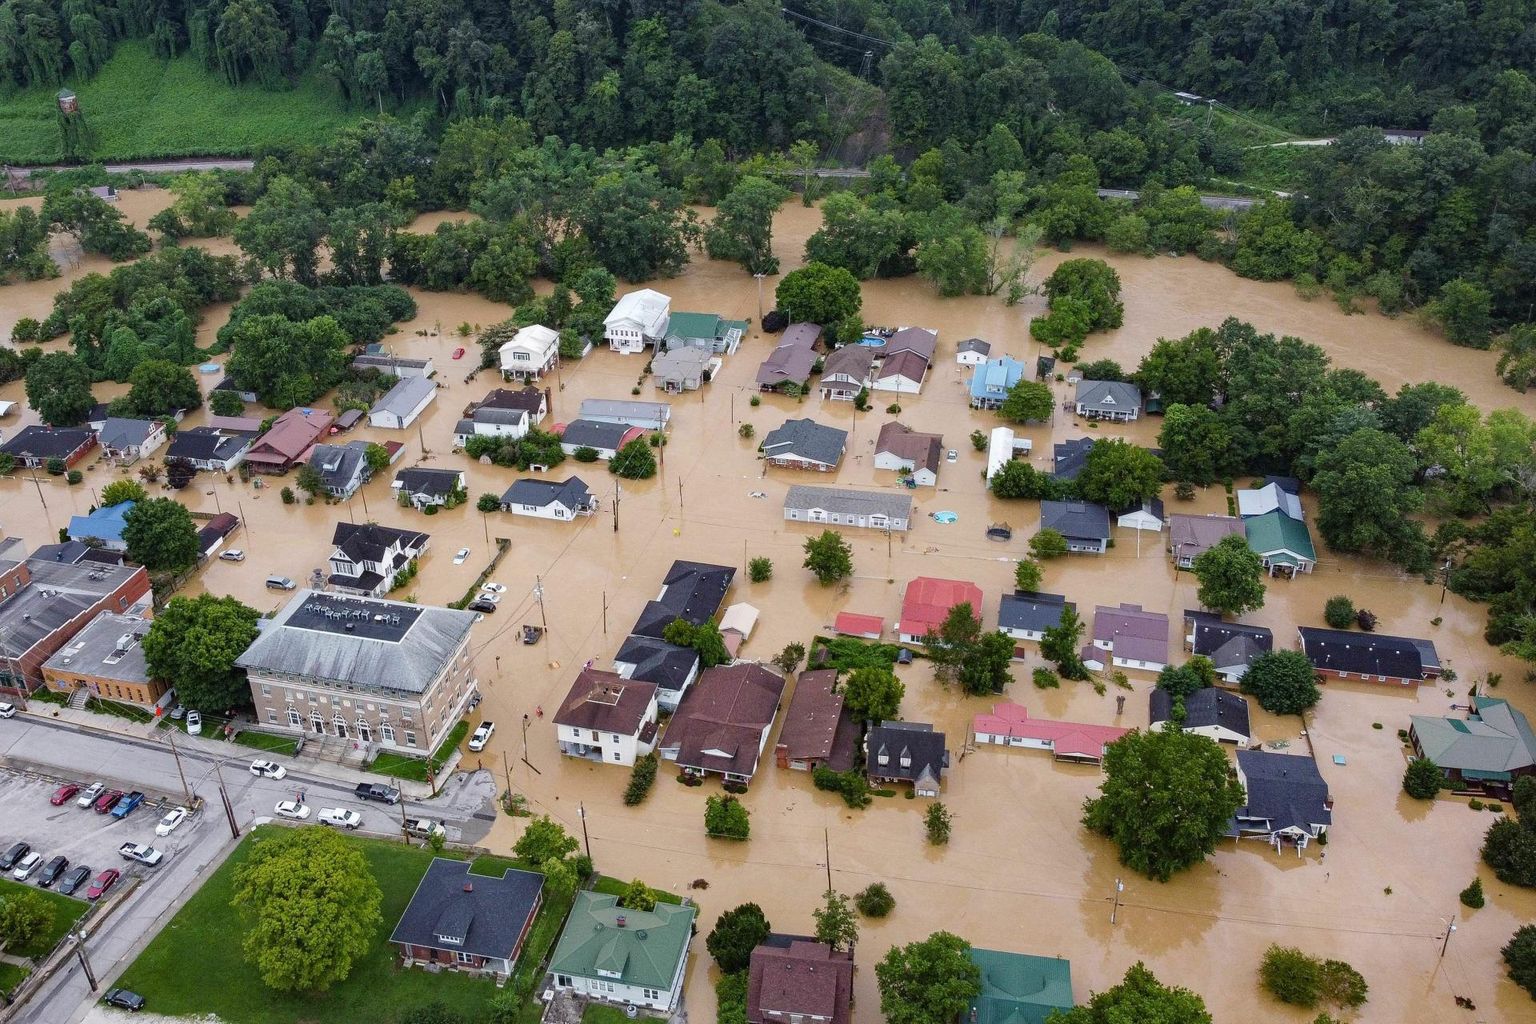 Vee alla jäänud majad Kentucky jõe põhjaharu ääres Jacksonis. 